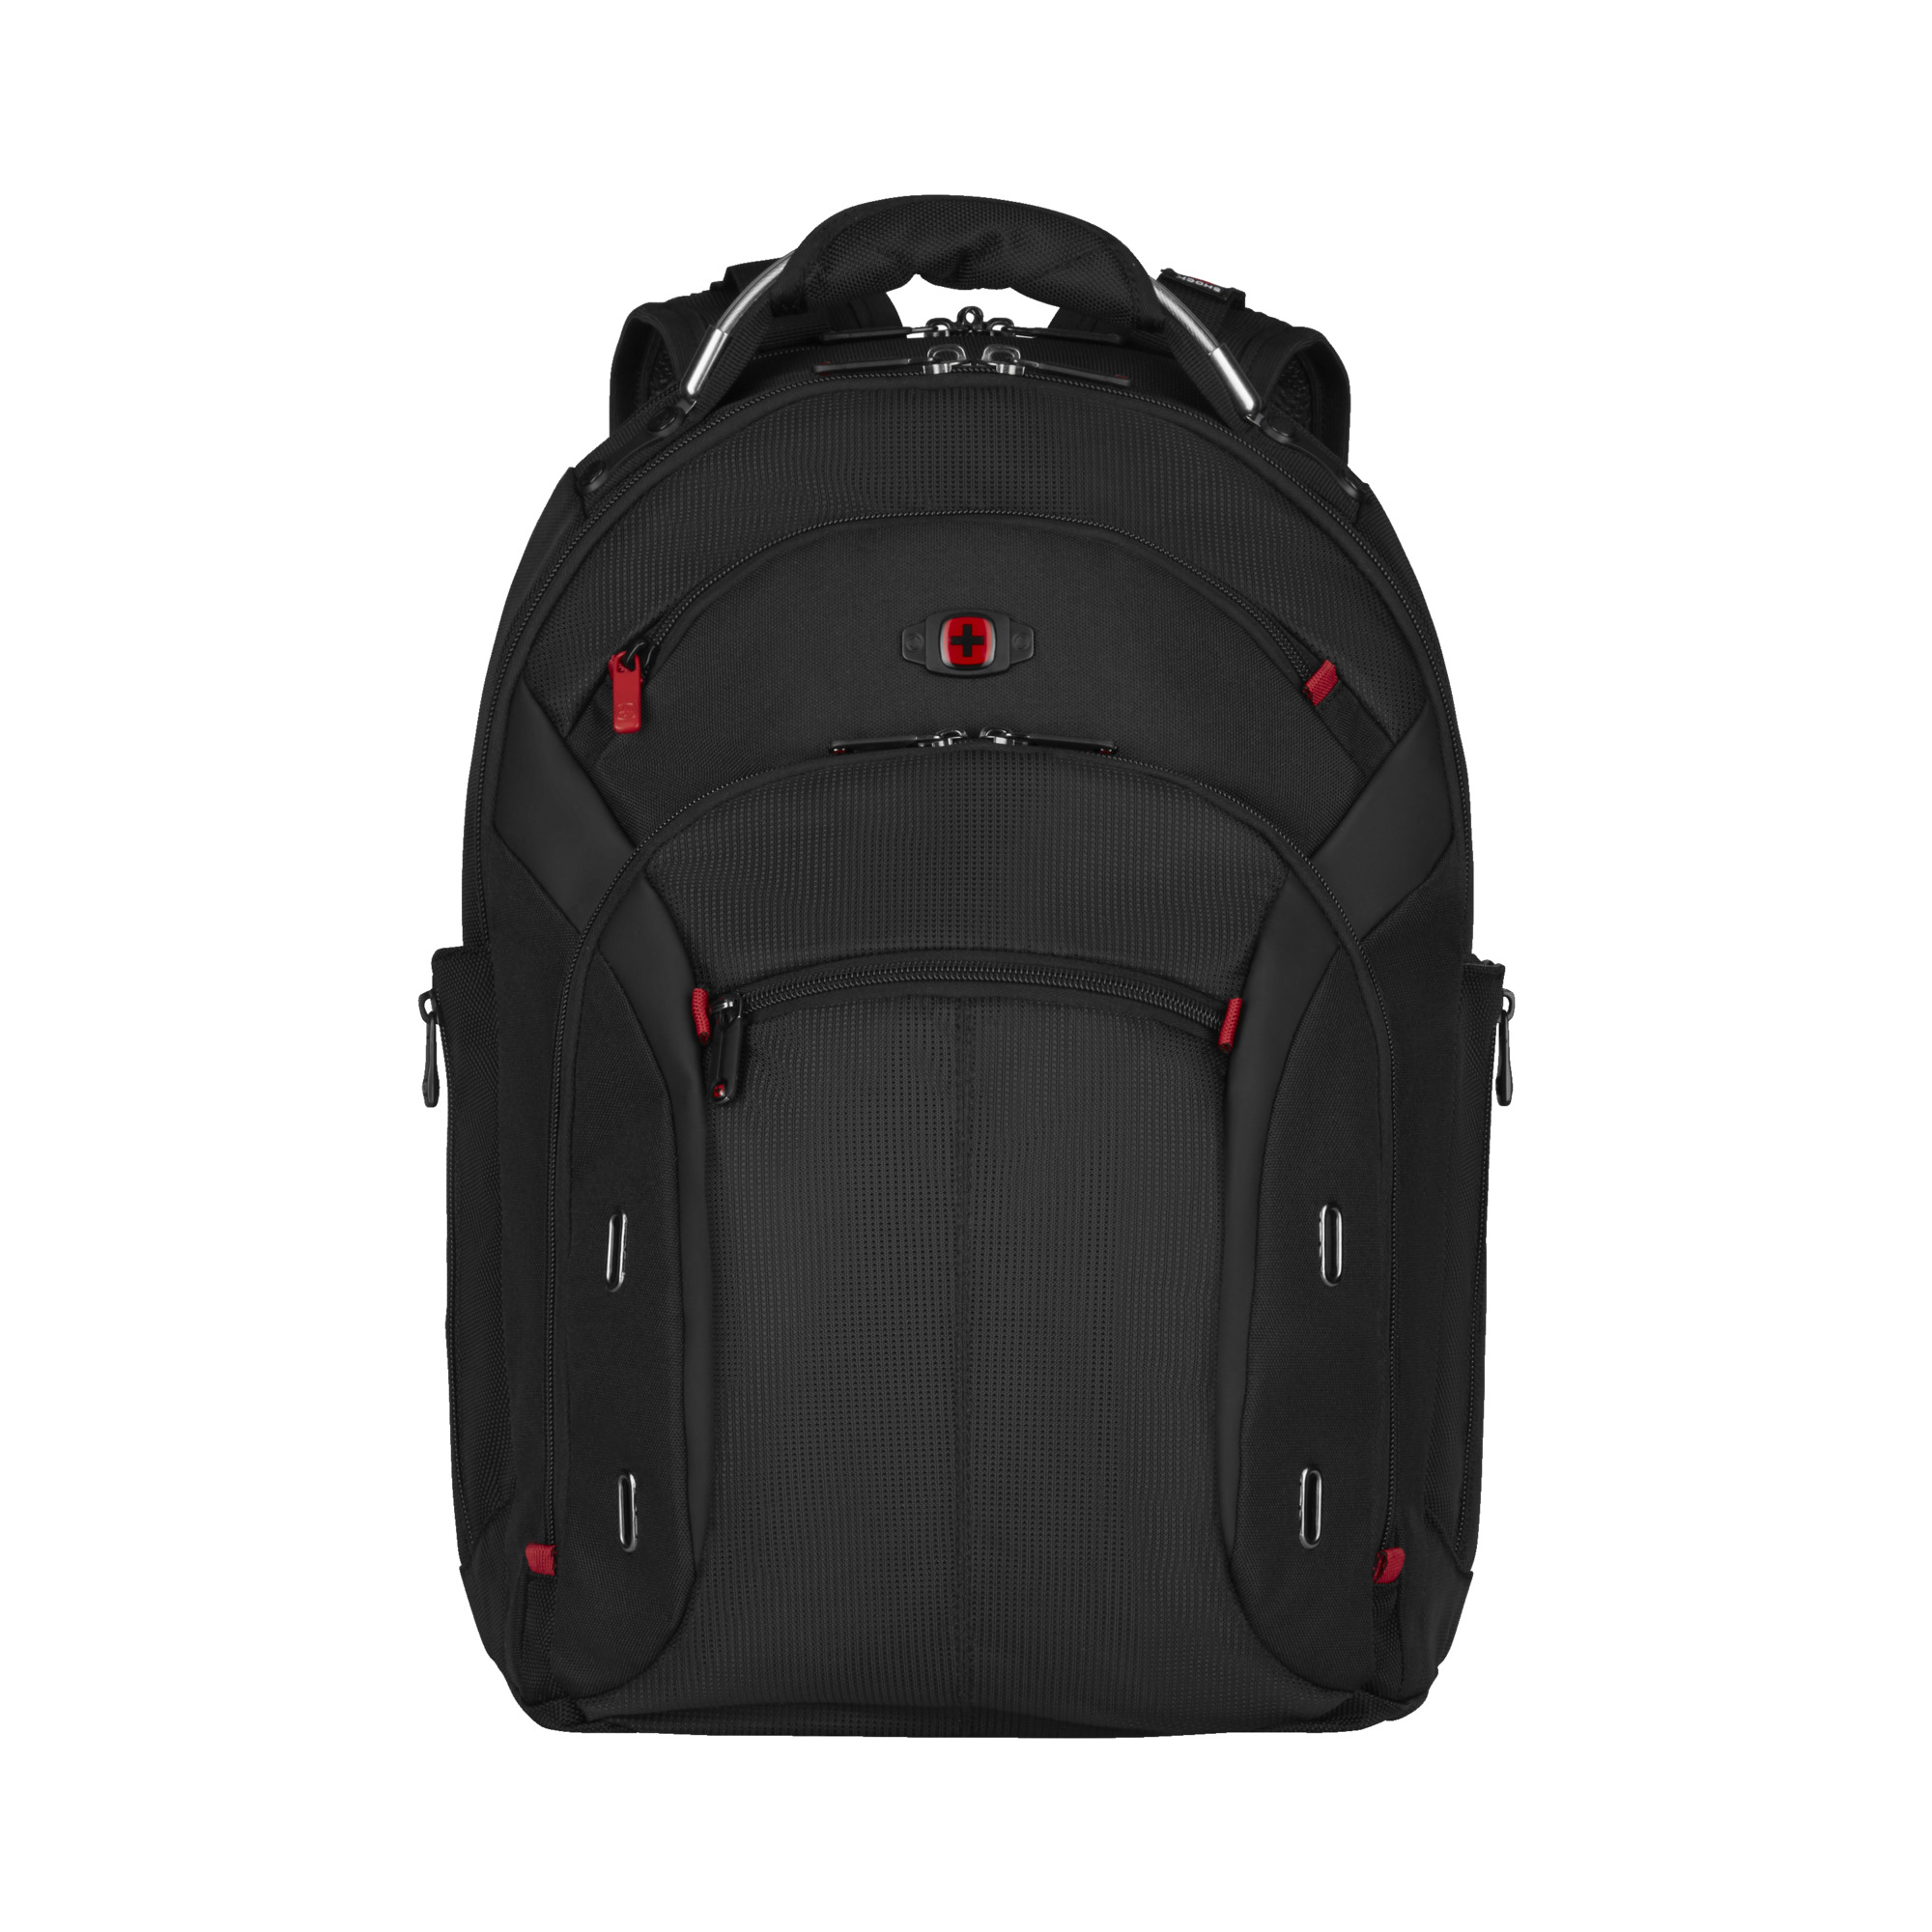 Stewart Island Slaapkamer hoed Wenger backpack for 15 inch laptop